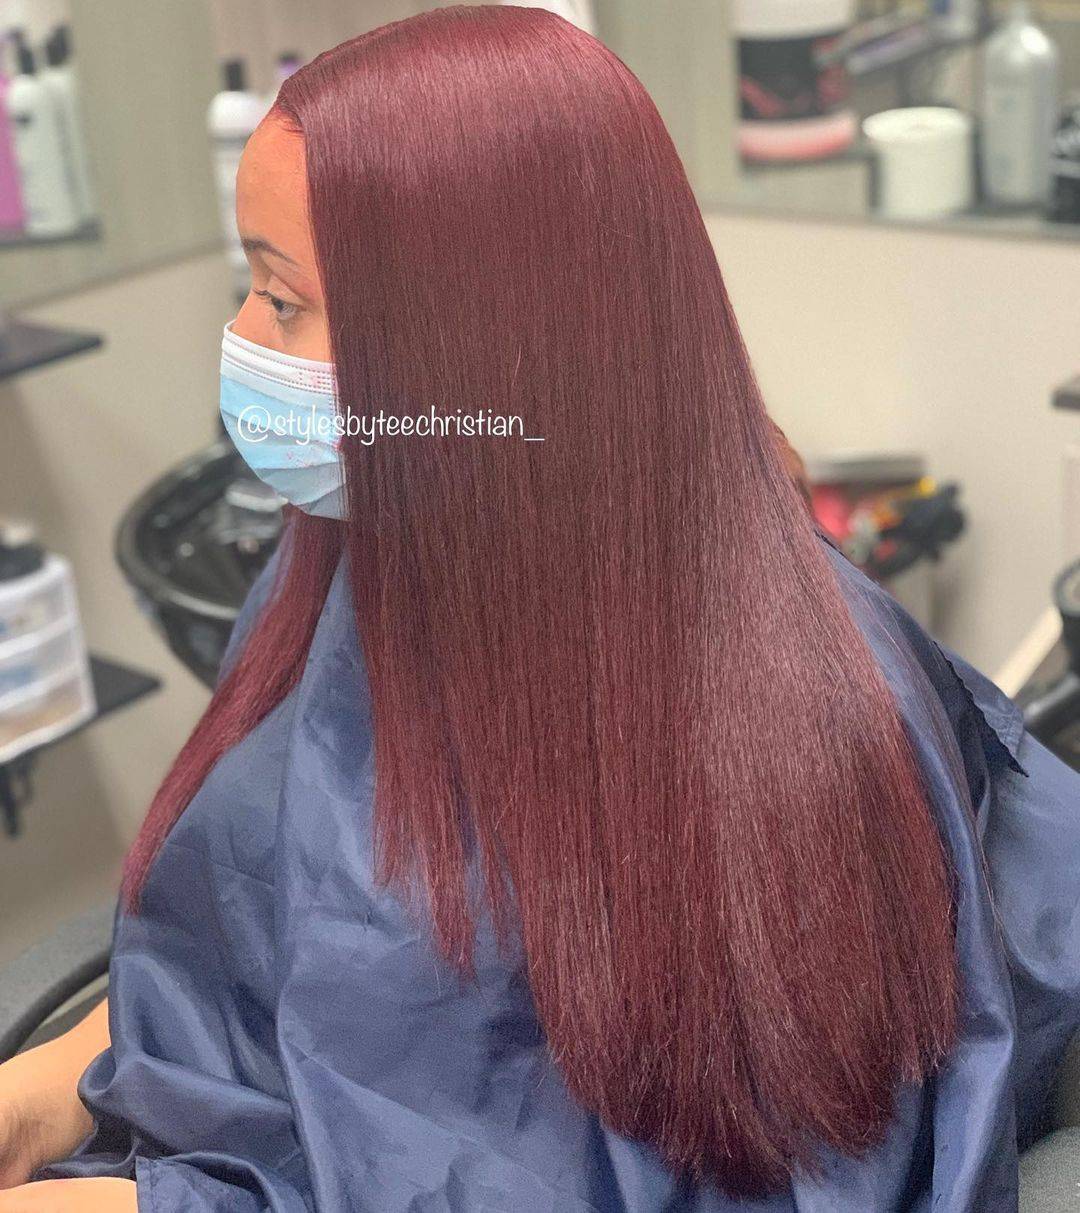 Burgundy hair color 304 burgundy hair color | burgundy hair color for women | burgundy hair color highlights Burgundy Hair Color